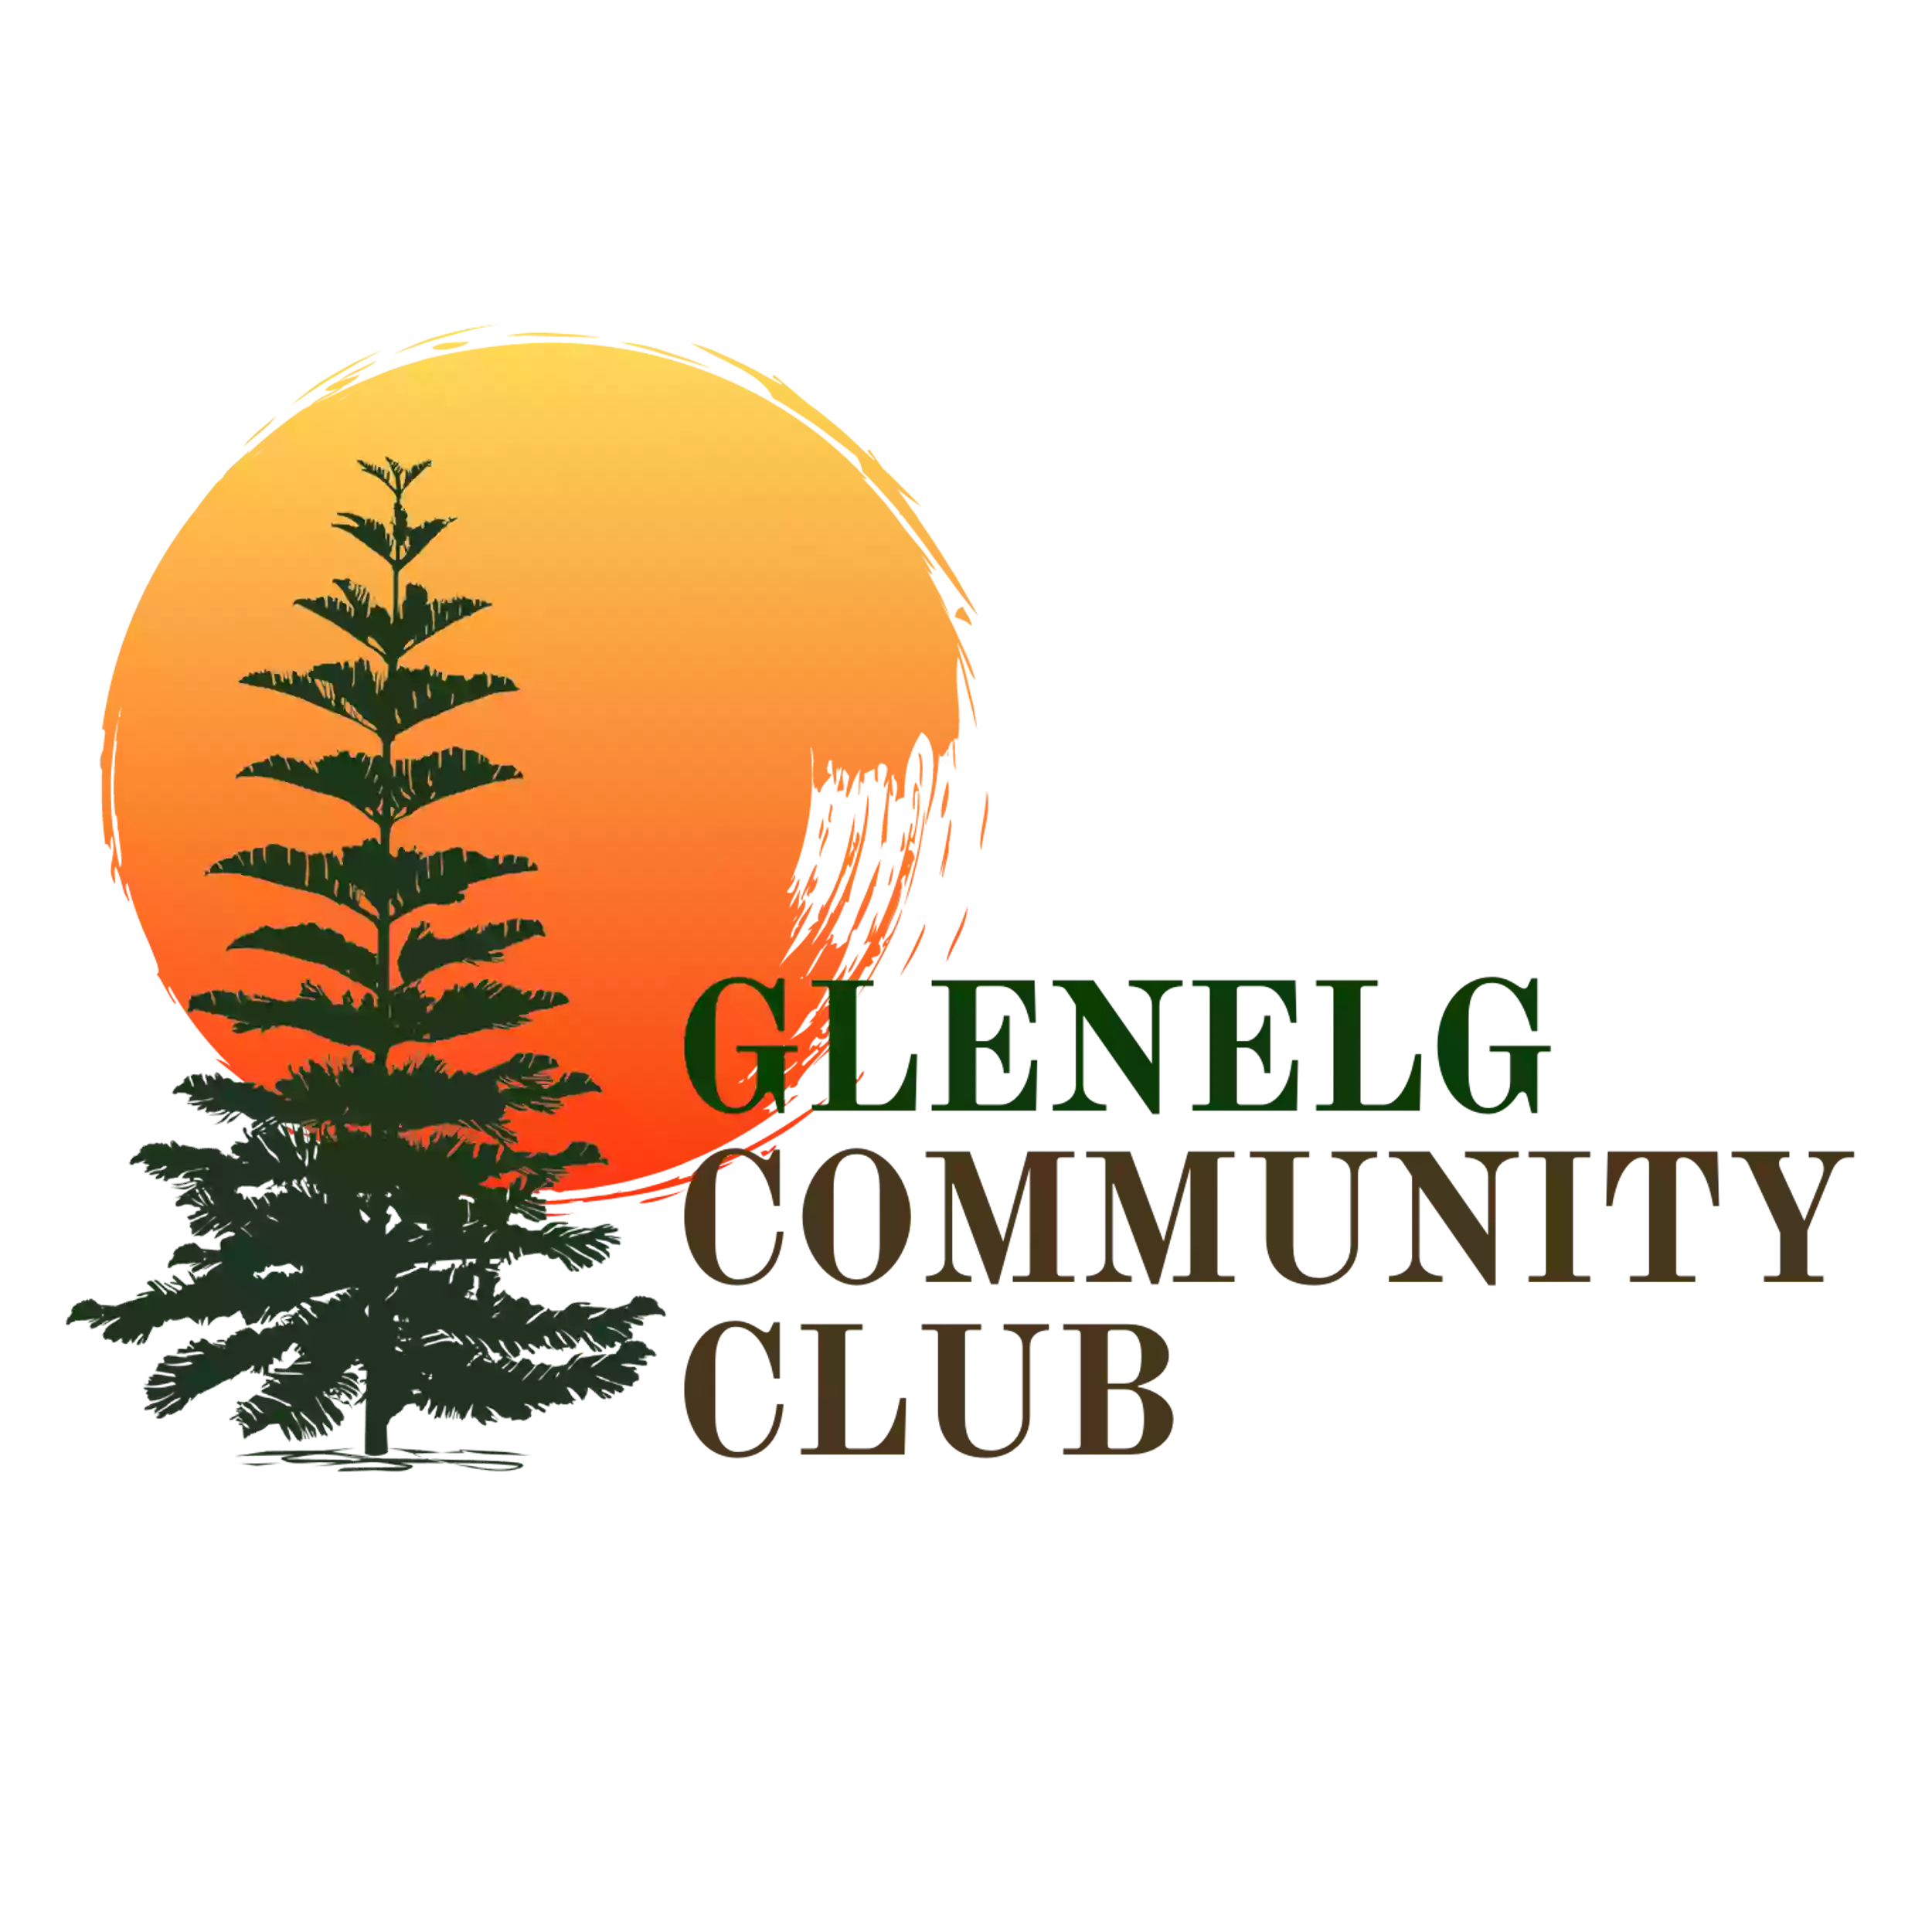 Glenelg Community Club